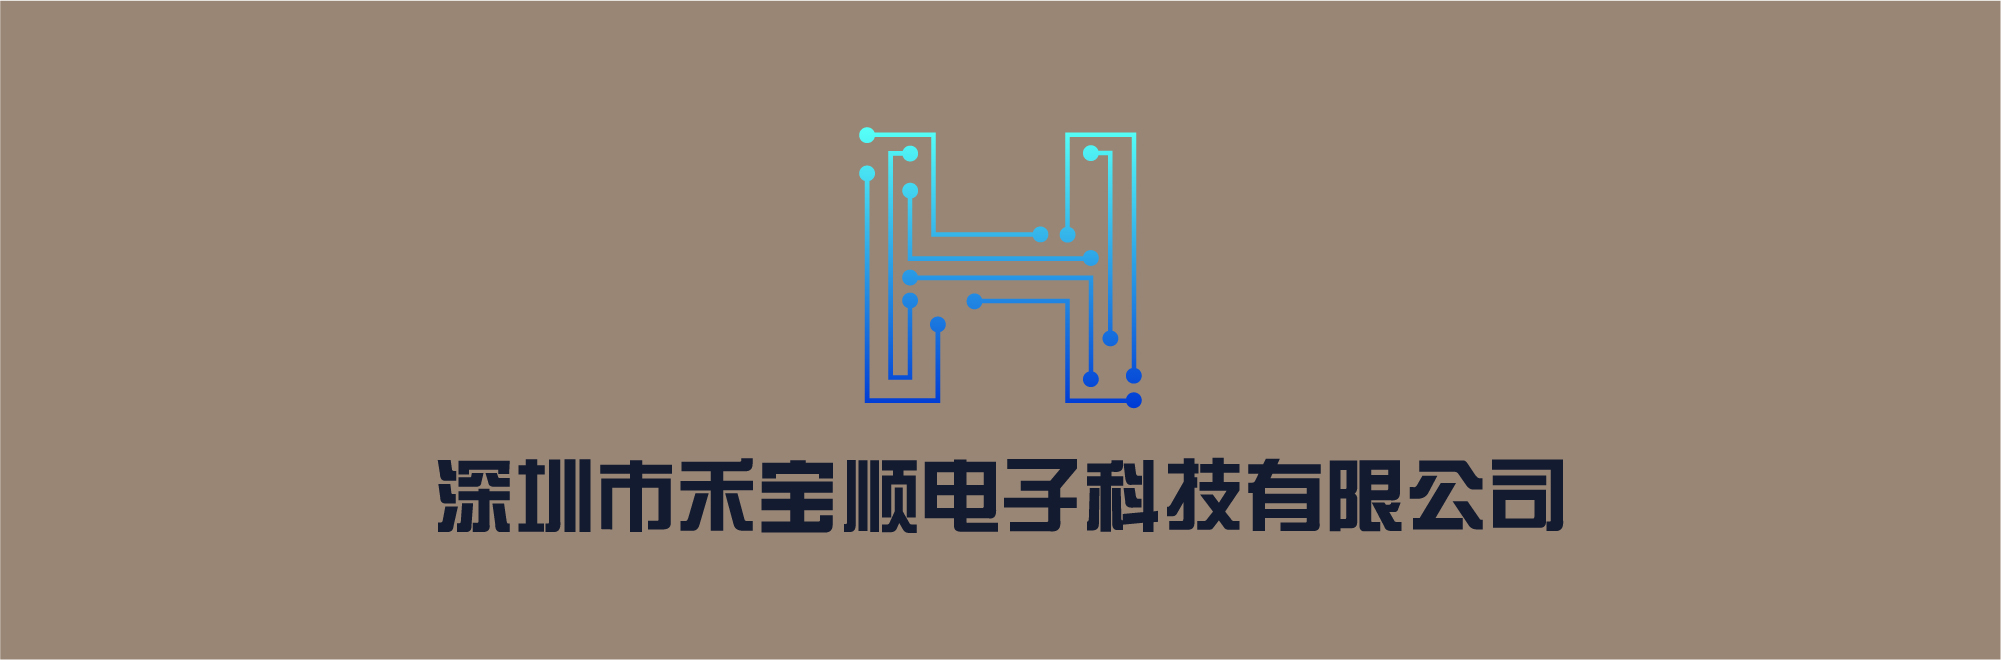 深圳市禾宝顺电子科技有限公司